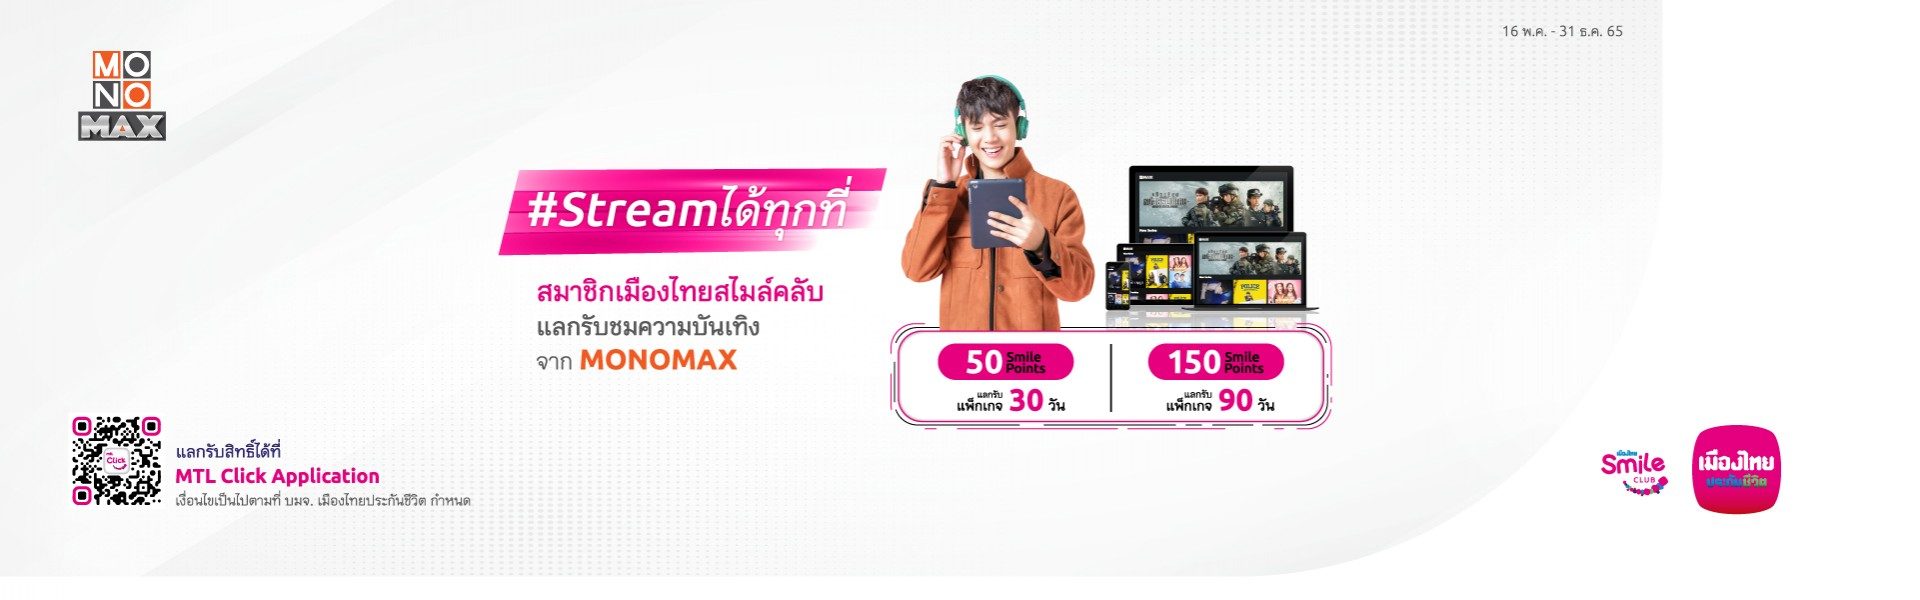 พิเศษเฉพาะสมาชิกเมืองไทยสไมล์คลับ แลกรับชมความบันเทิงจาก MONOMAX  ฟรี 30 วัน